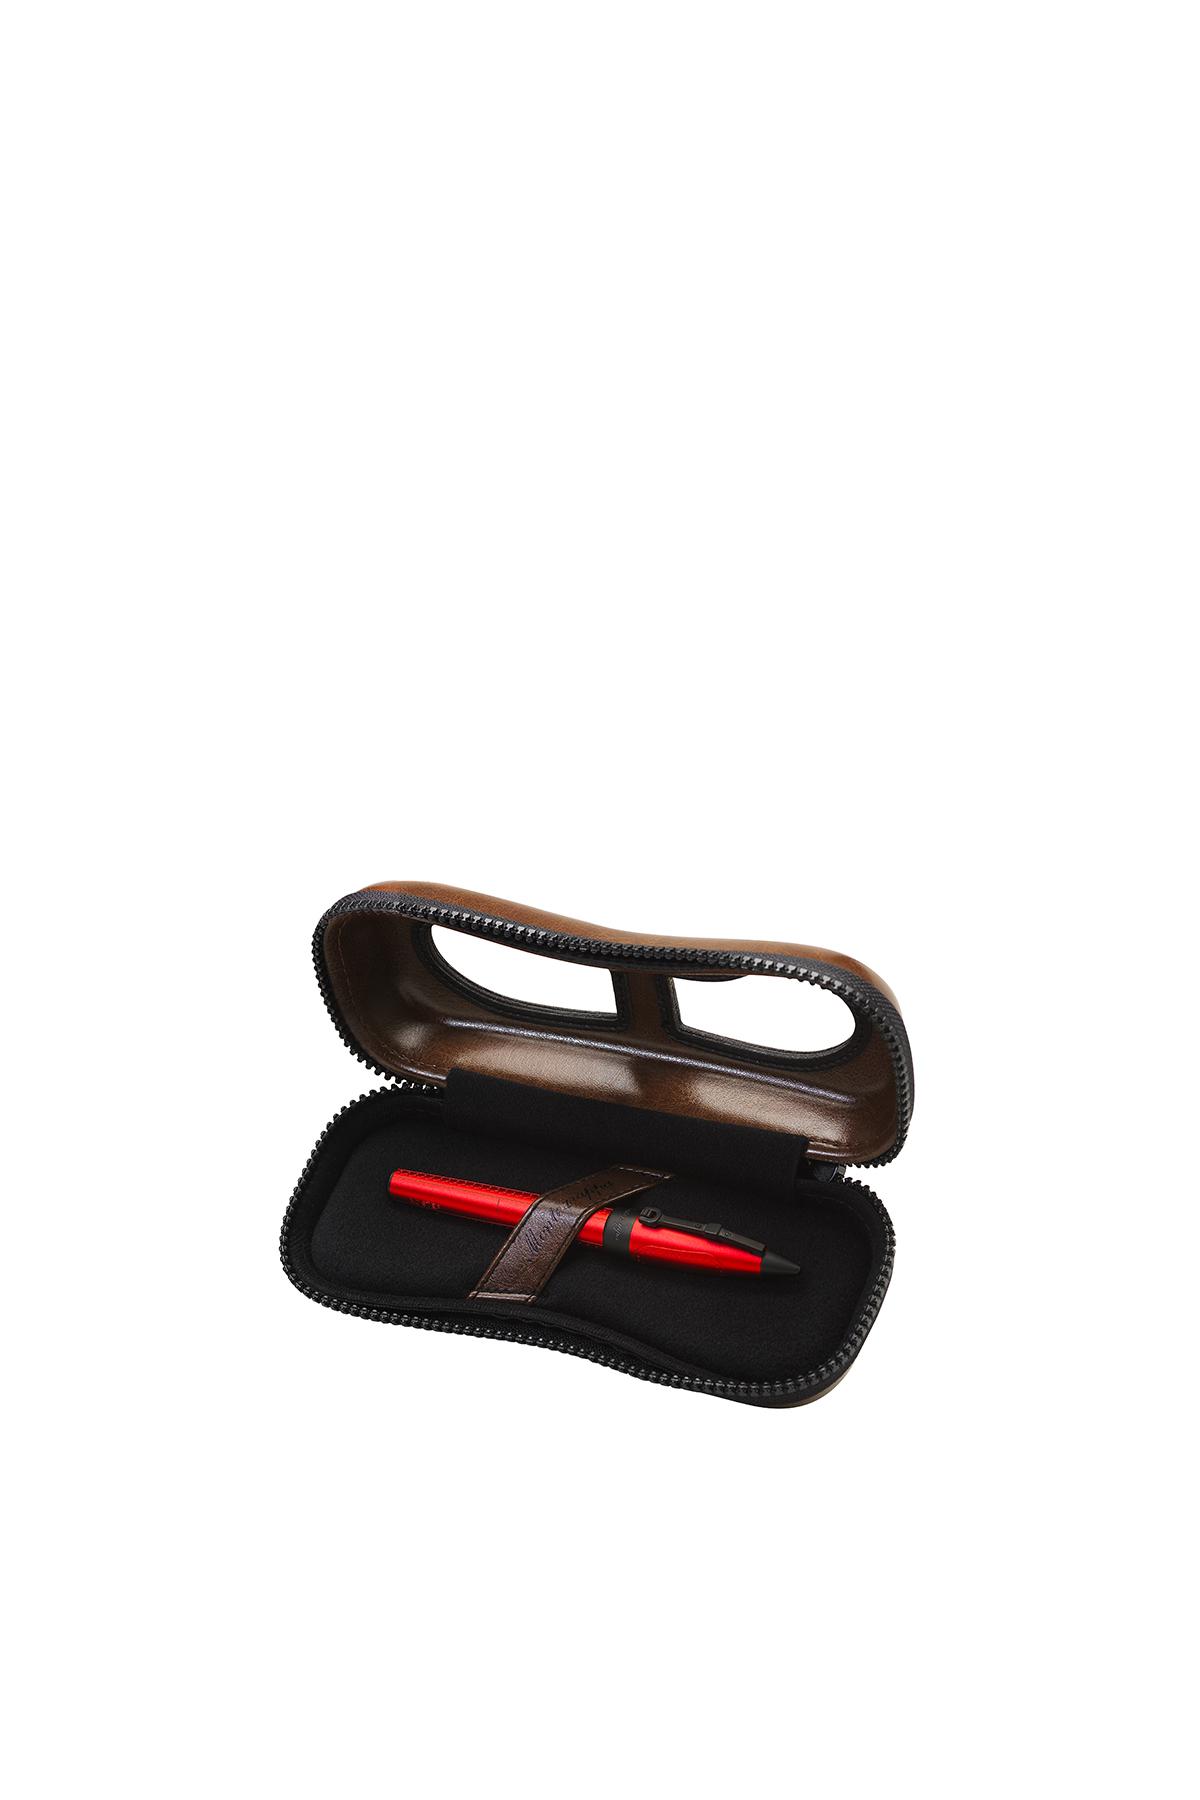 Ручка Aviator Red Baron, Montegrappa, цена по запросу (Mercury)